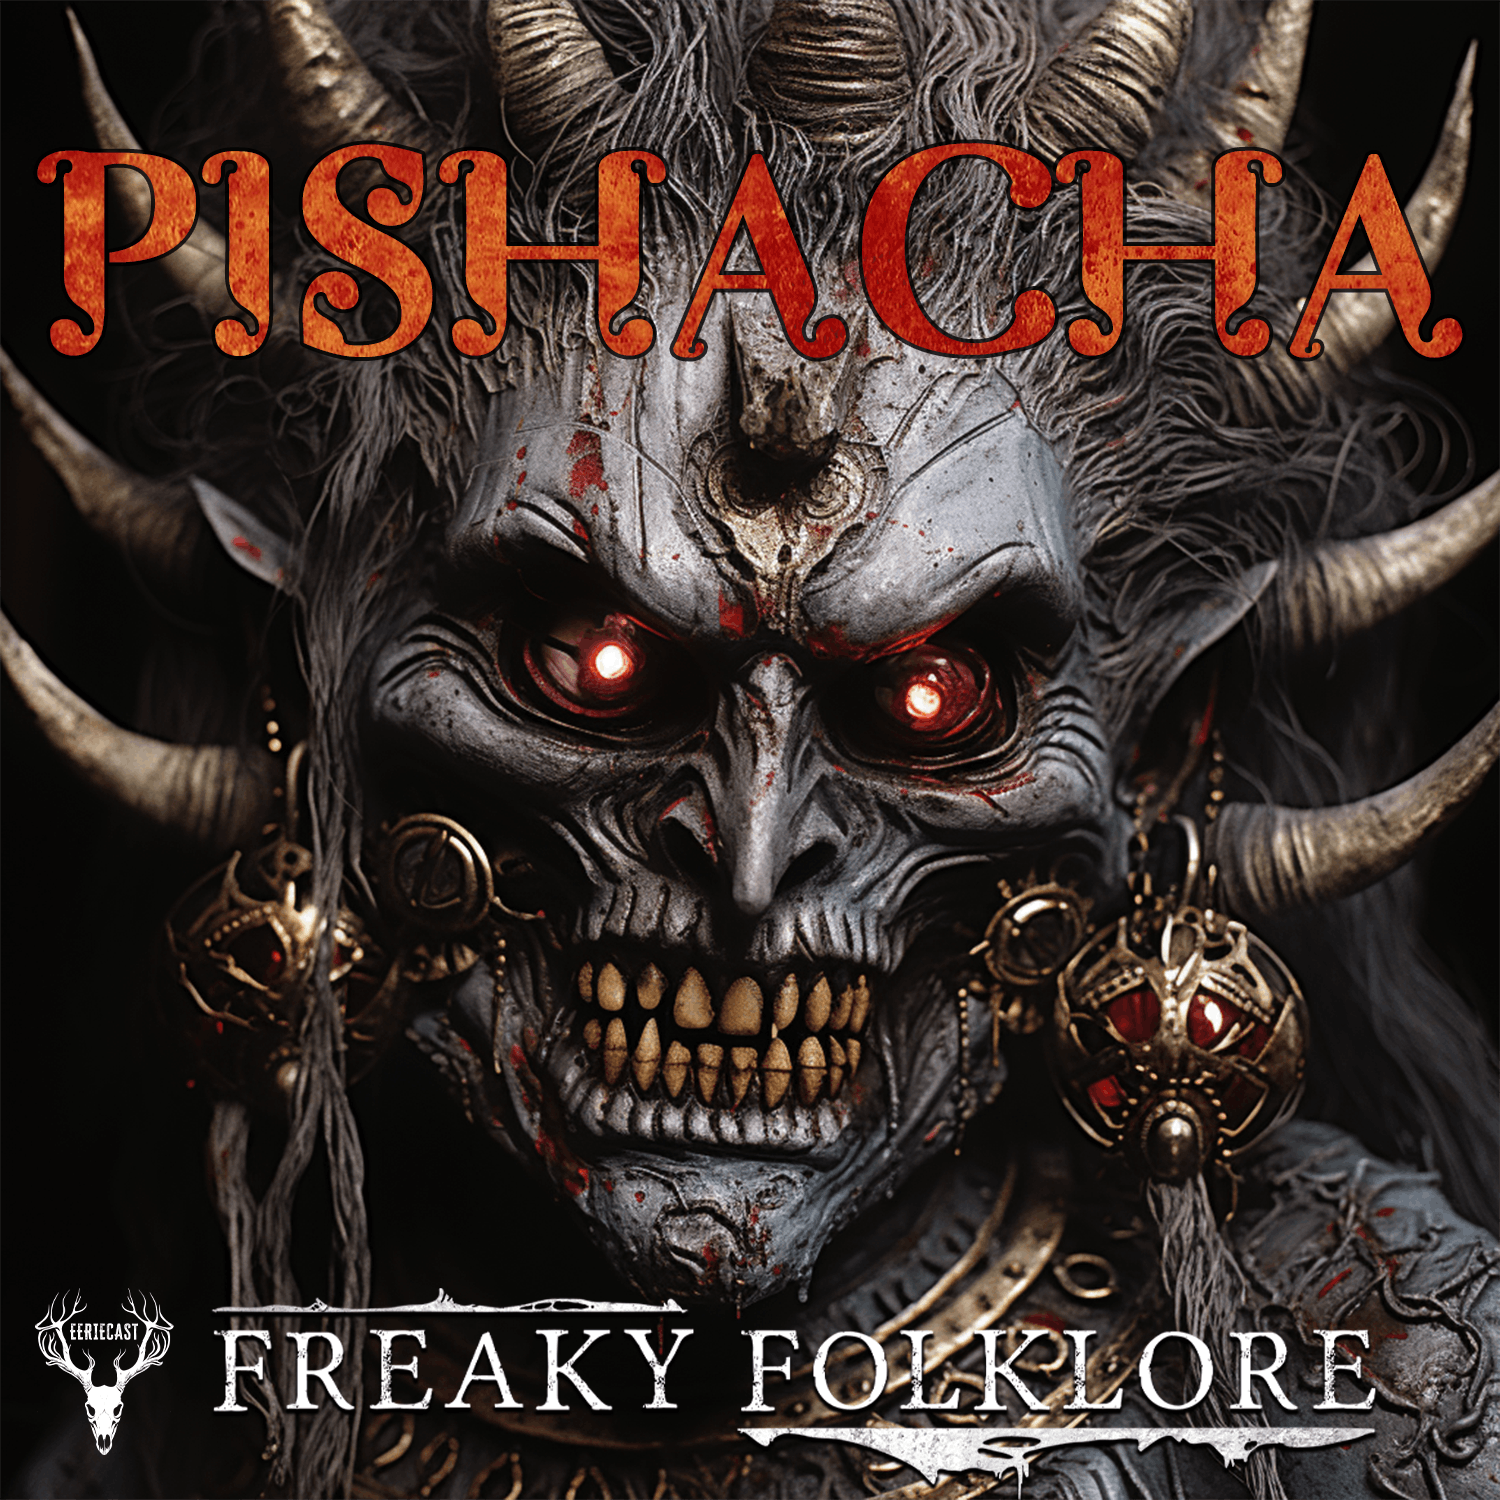 PISHACHA – Flesh-Eating Demon of India